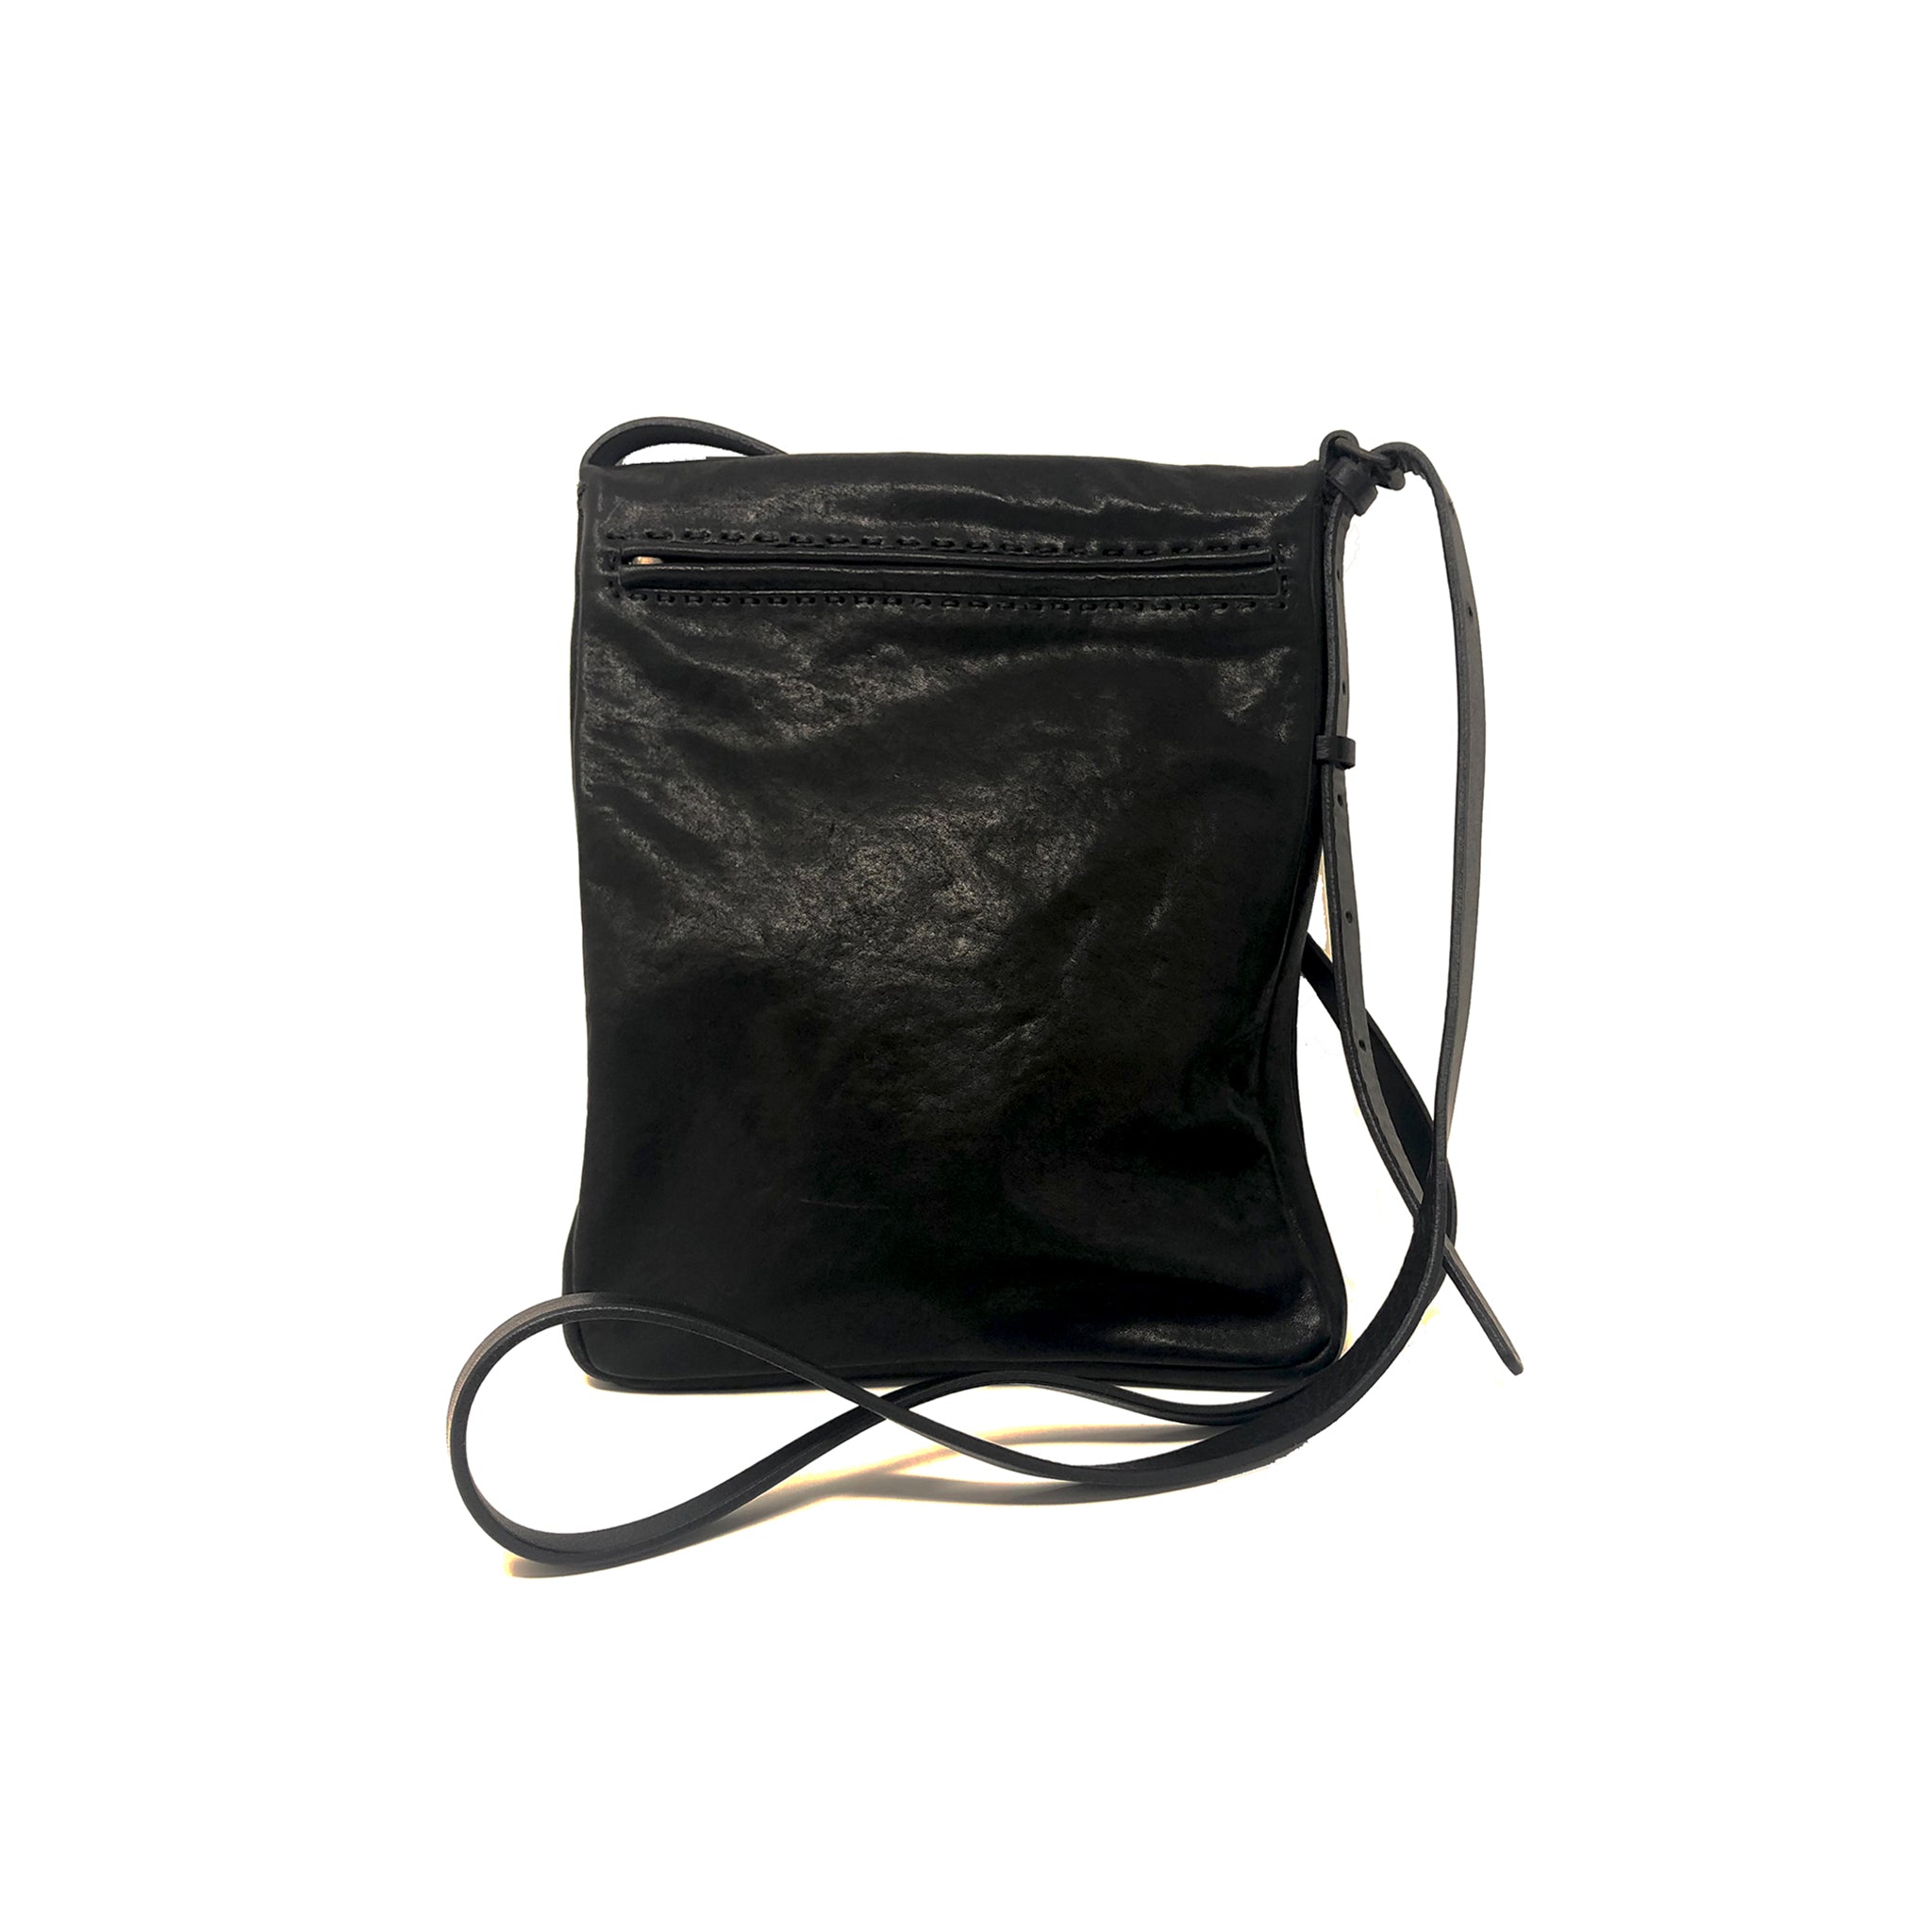 Melbourne Leather Bag